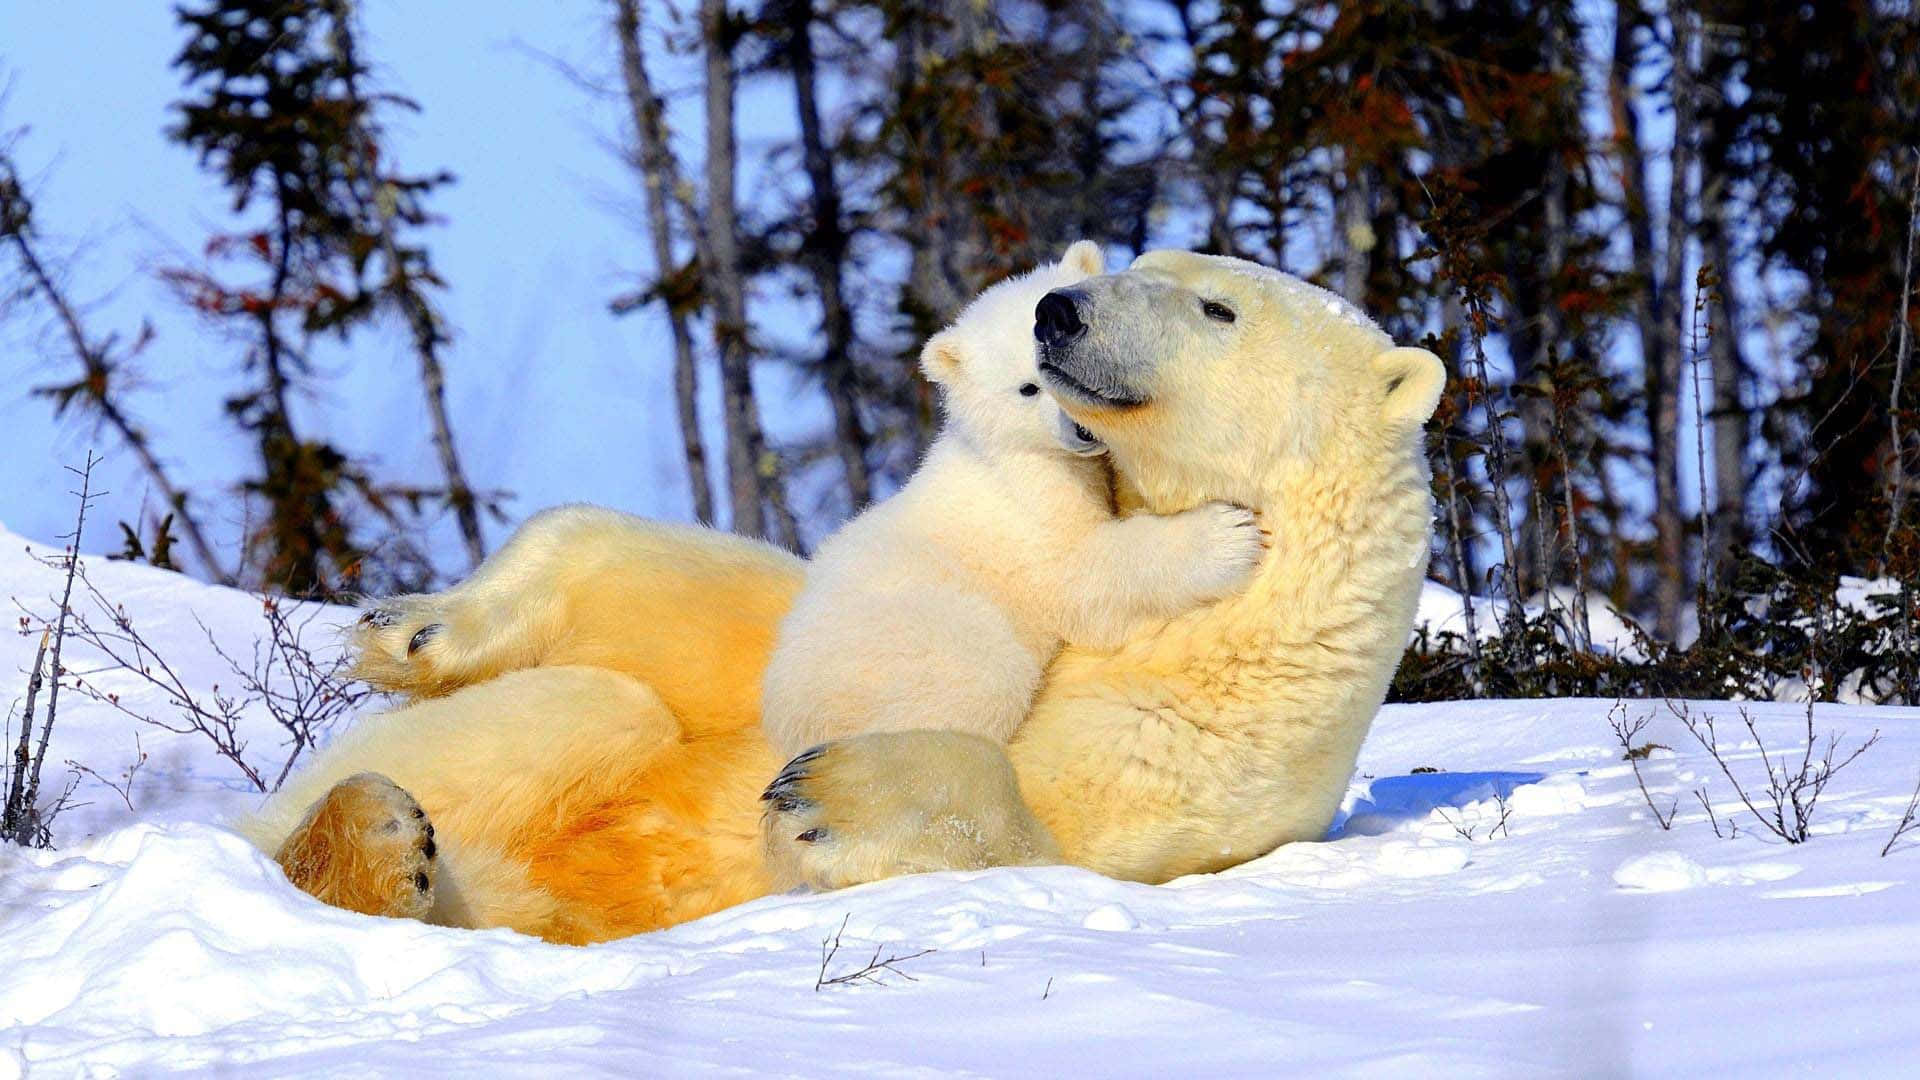 Ettæt Billede Af En Isbjørn I Dets Naturlige Levested